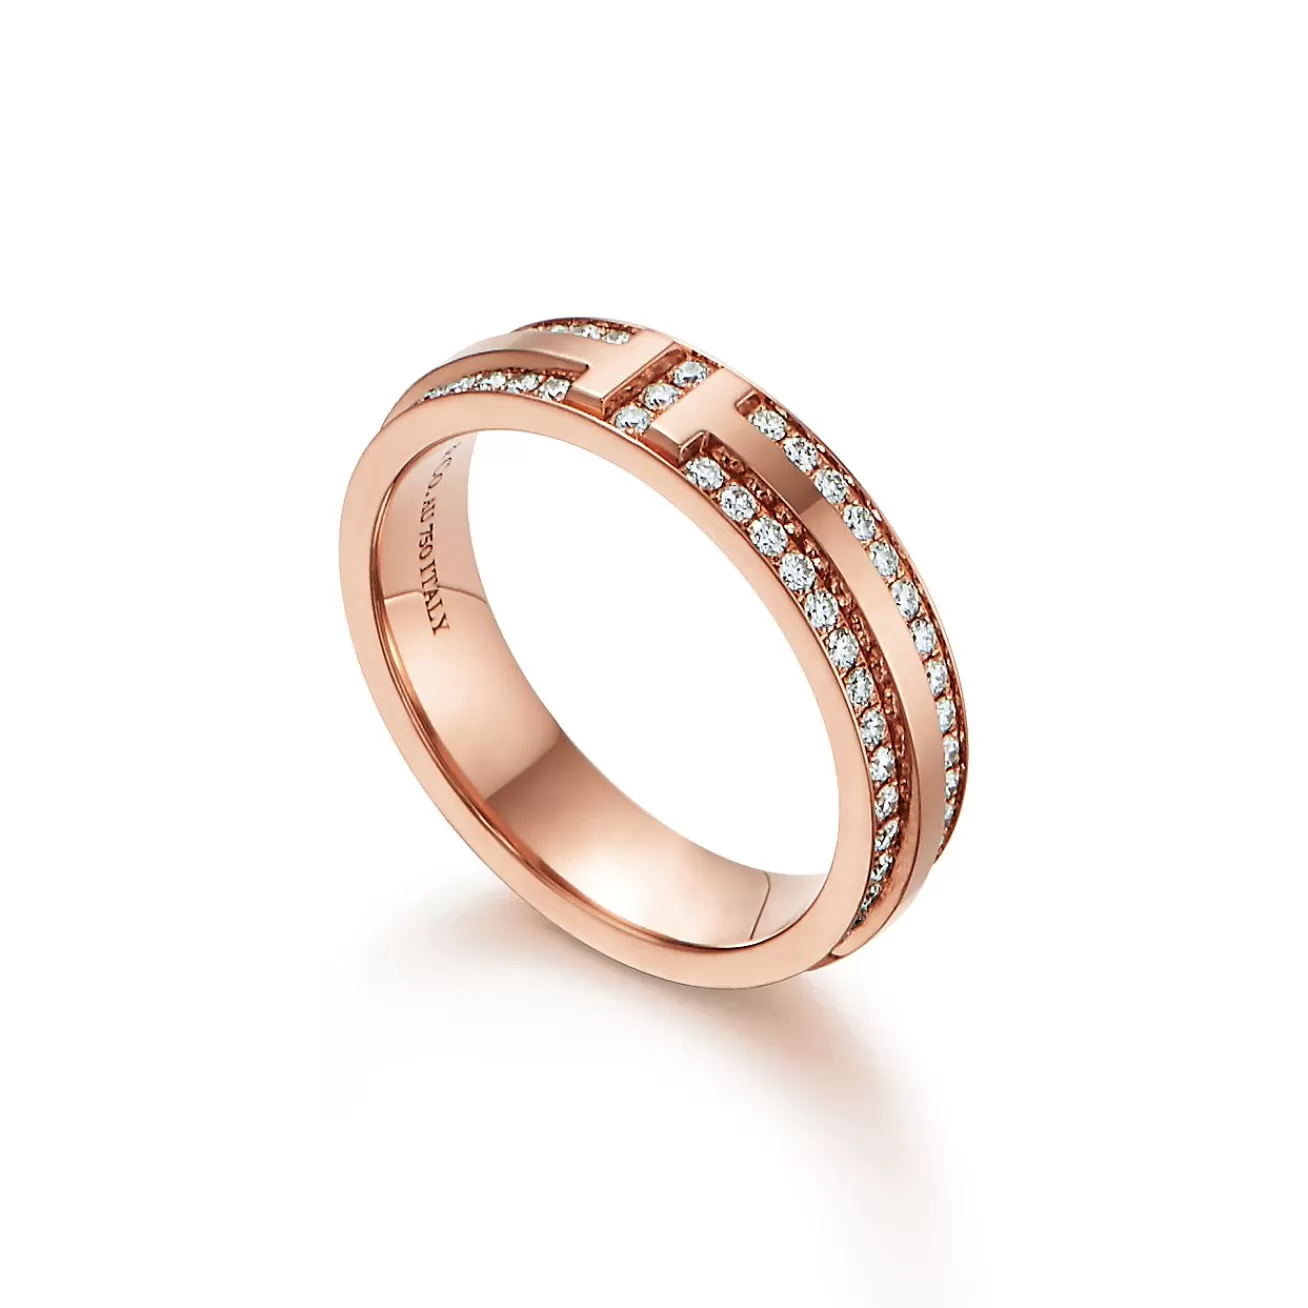 Tiffany & Co. Tiffany T narrow pavé diamond ring in 18k rose gold, 4.5 mm wide. | ^Women Rings | Men's Jewelry